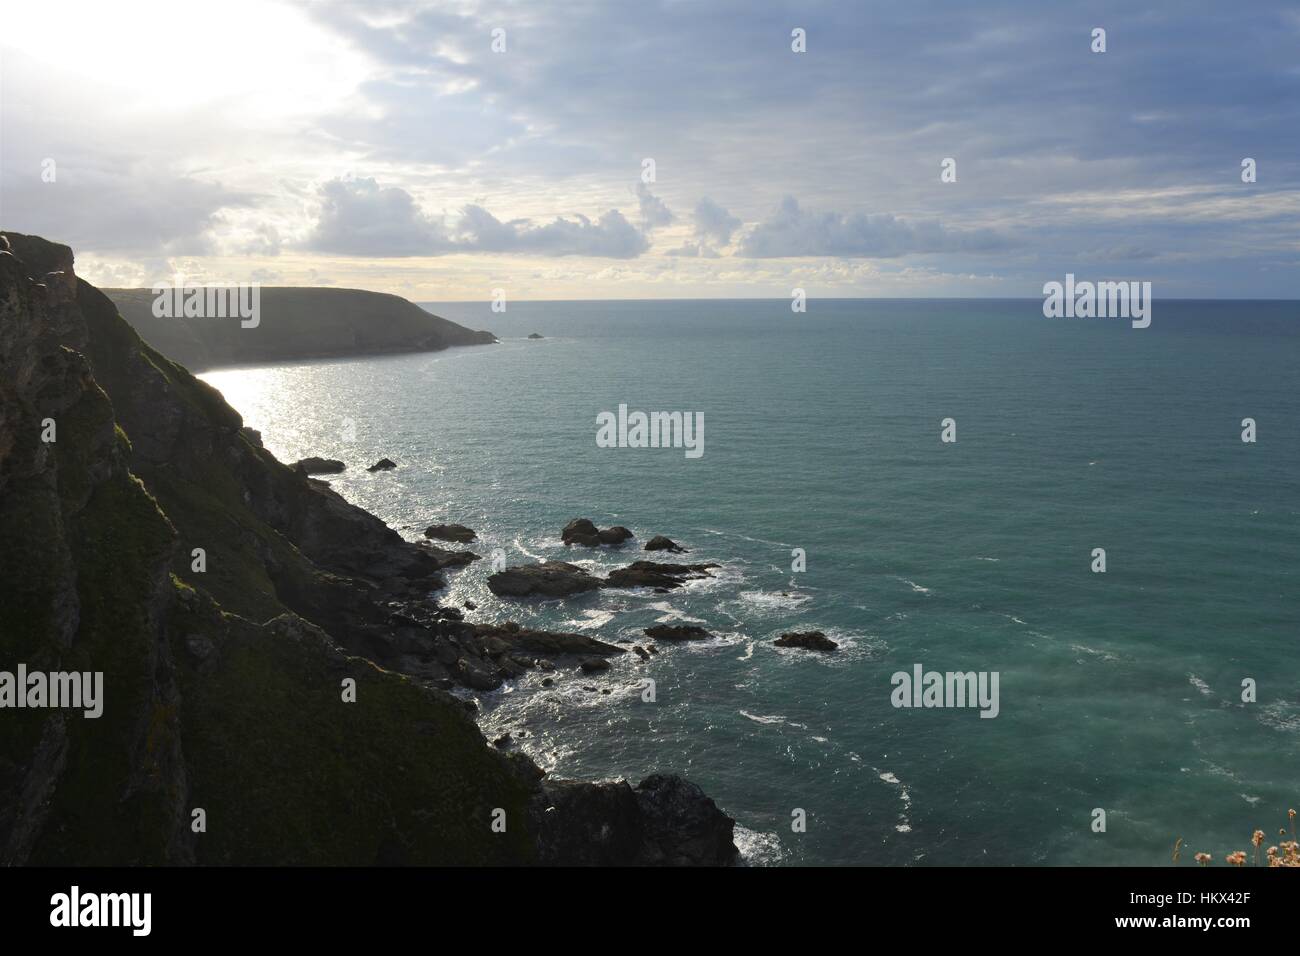 Vista del mar desde la costa, Cornwall, Inglaterra Foto de stock